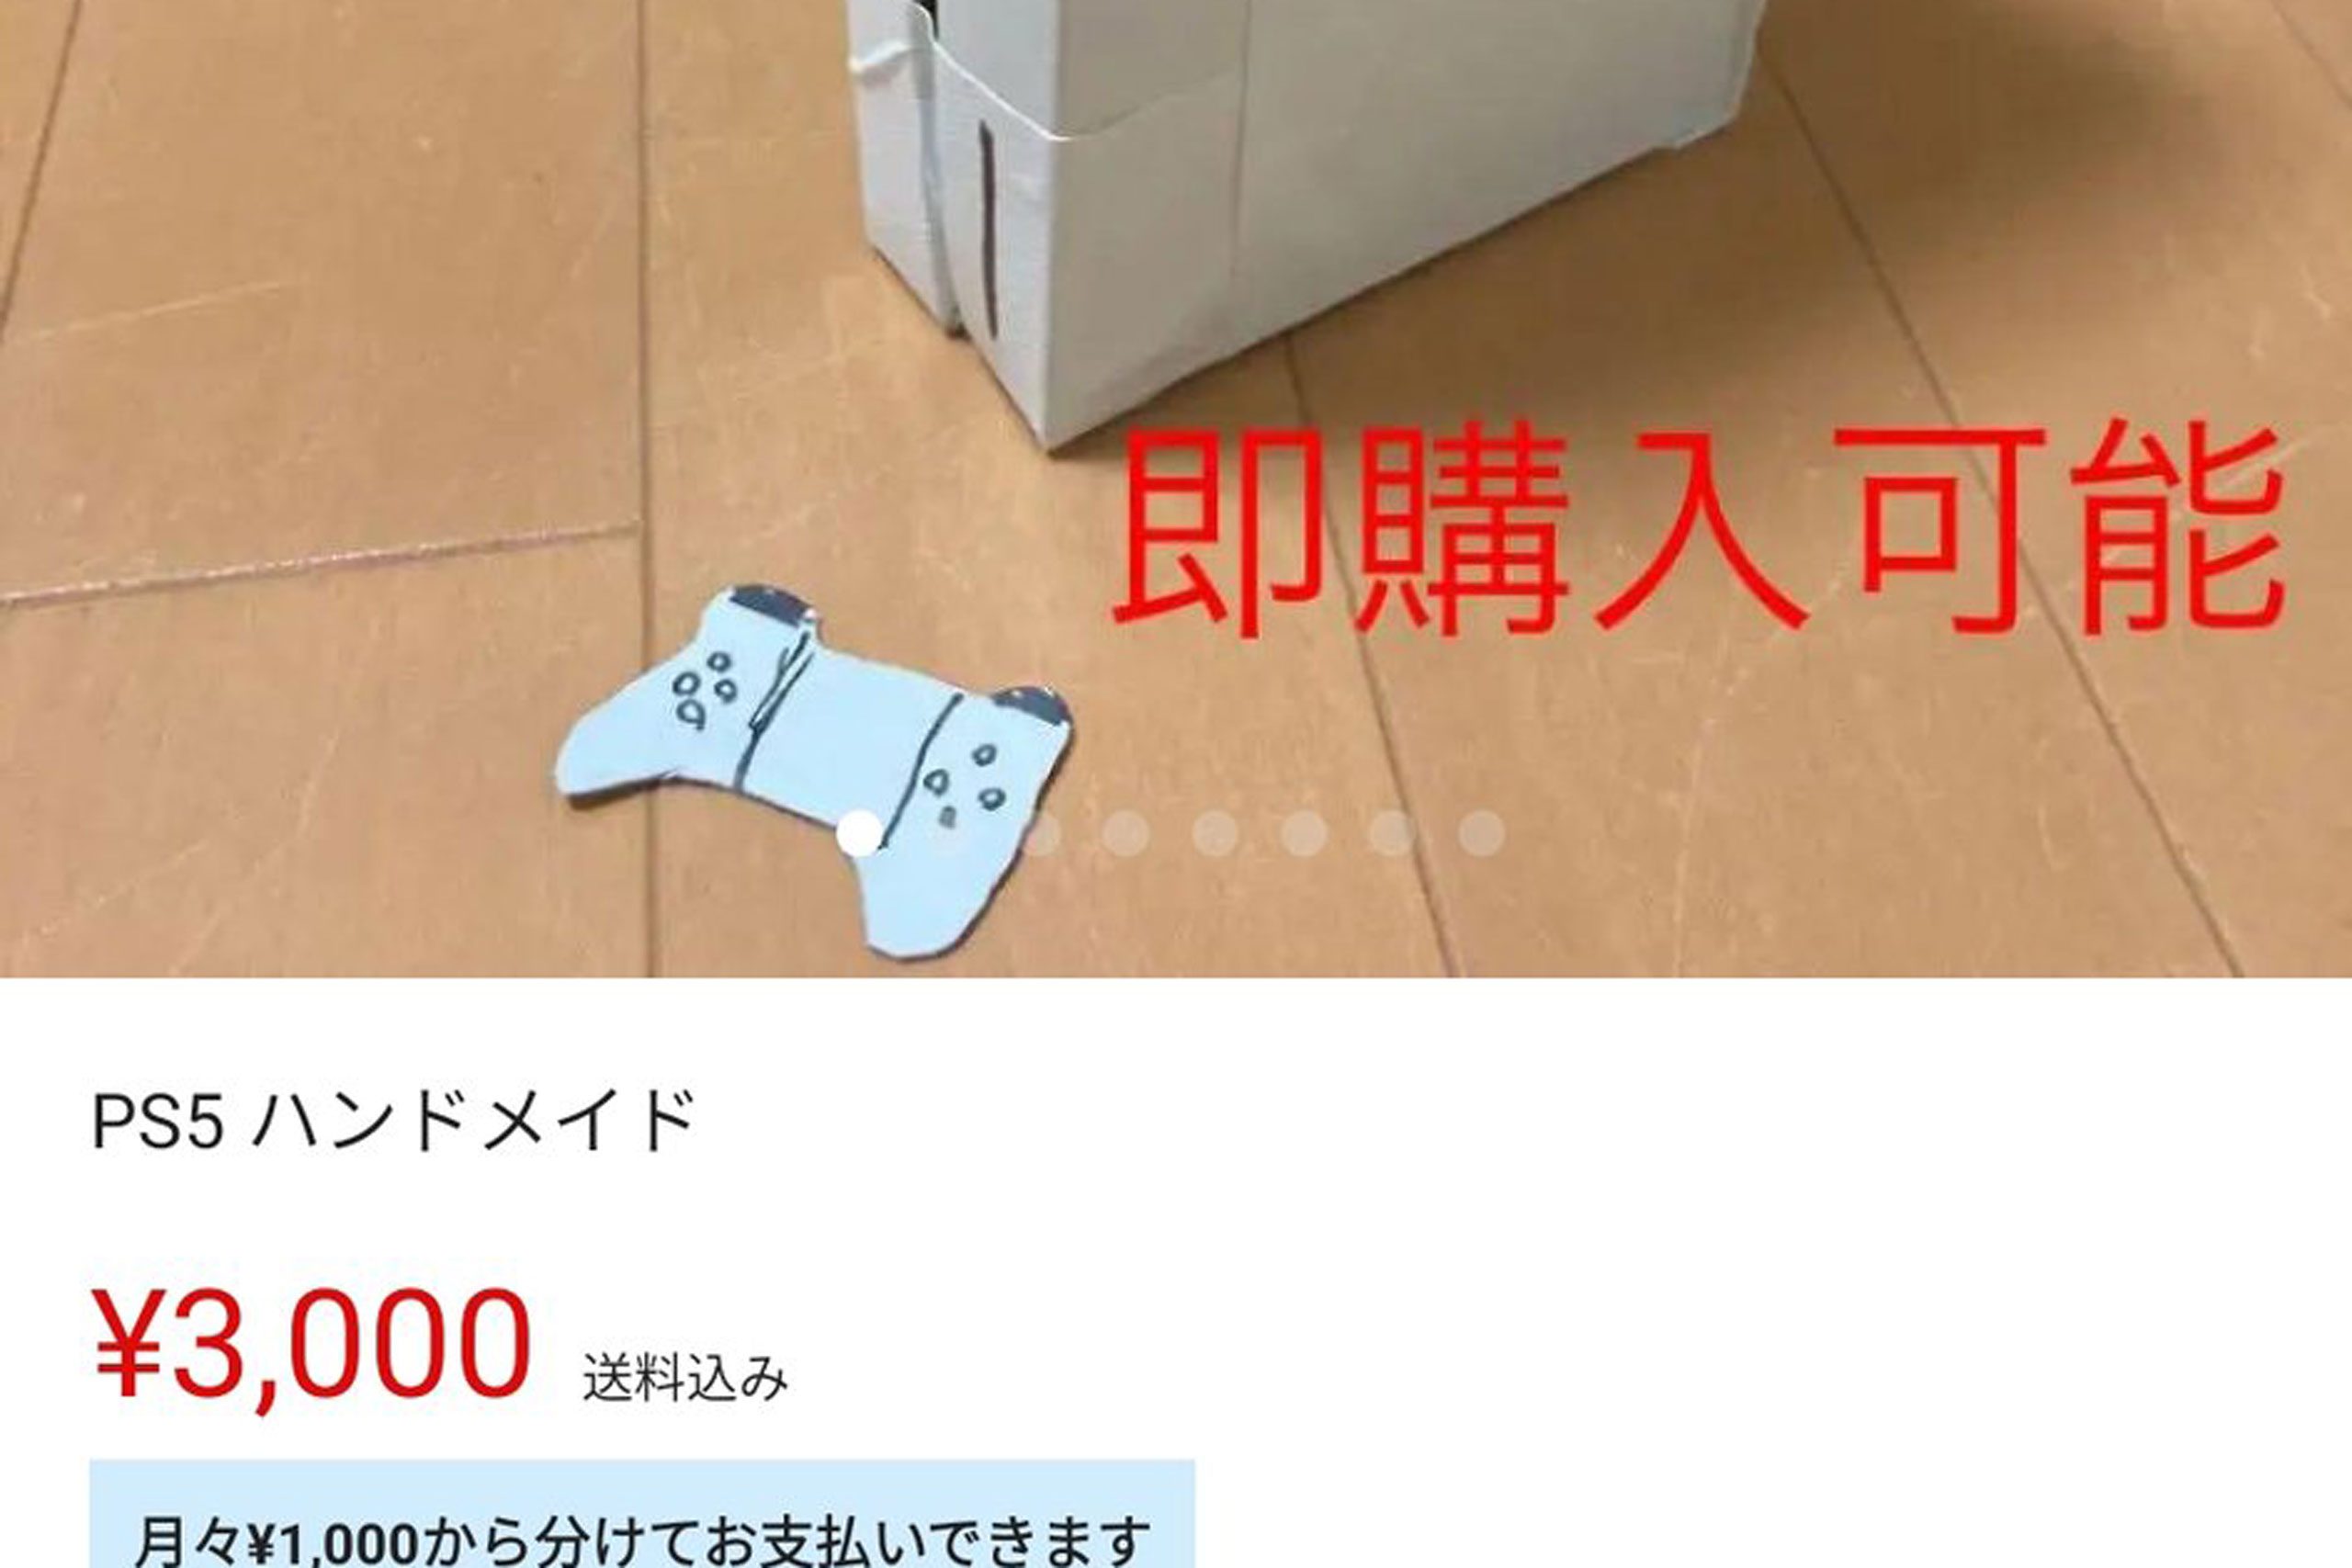 メルカリで3000円のps5を発見 予想外な 紙スペック に困惑の声相次ぐ ニュースサイトしらべぇ